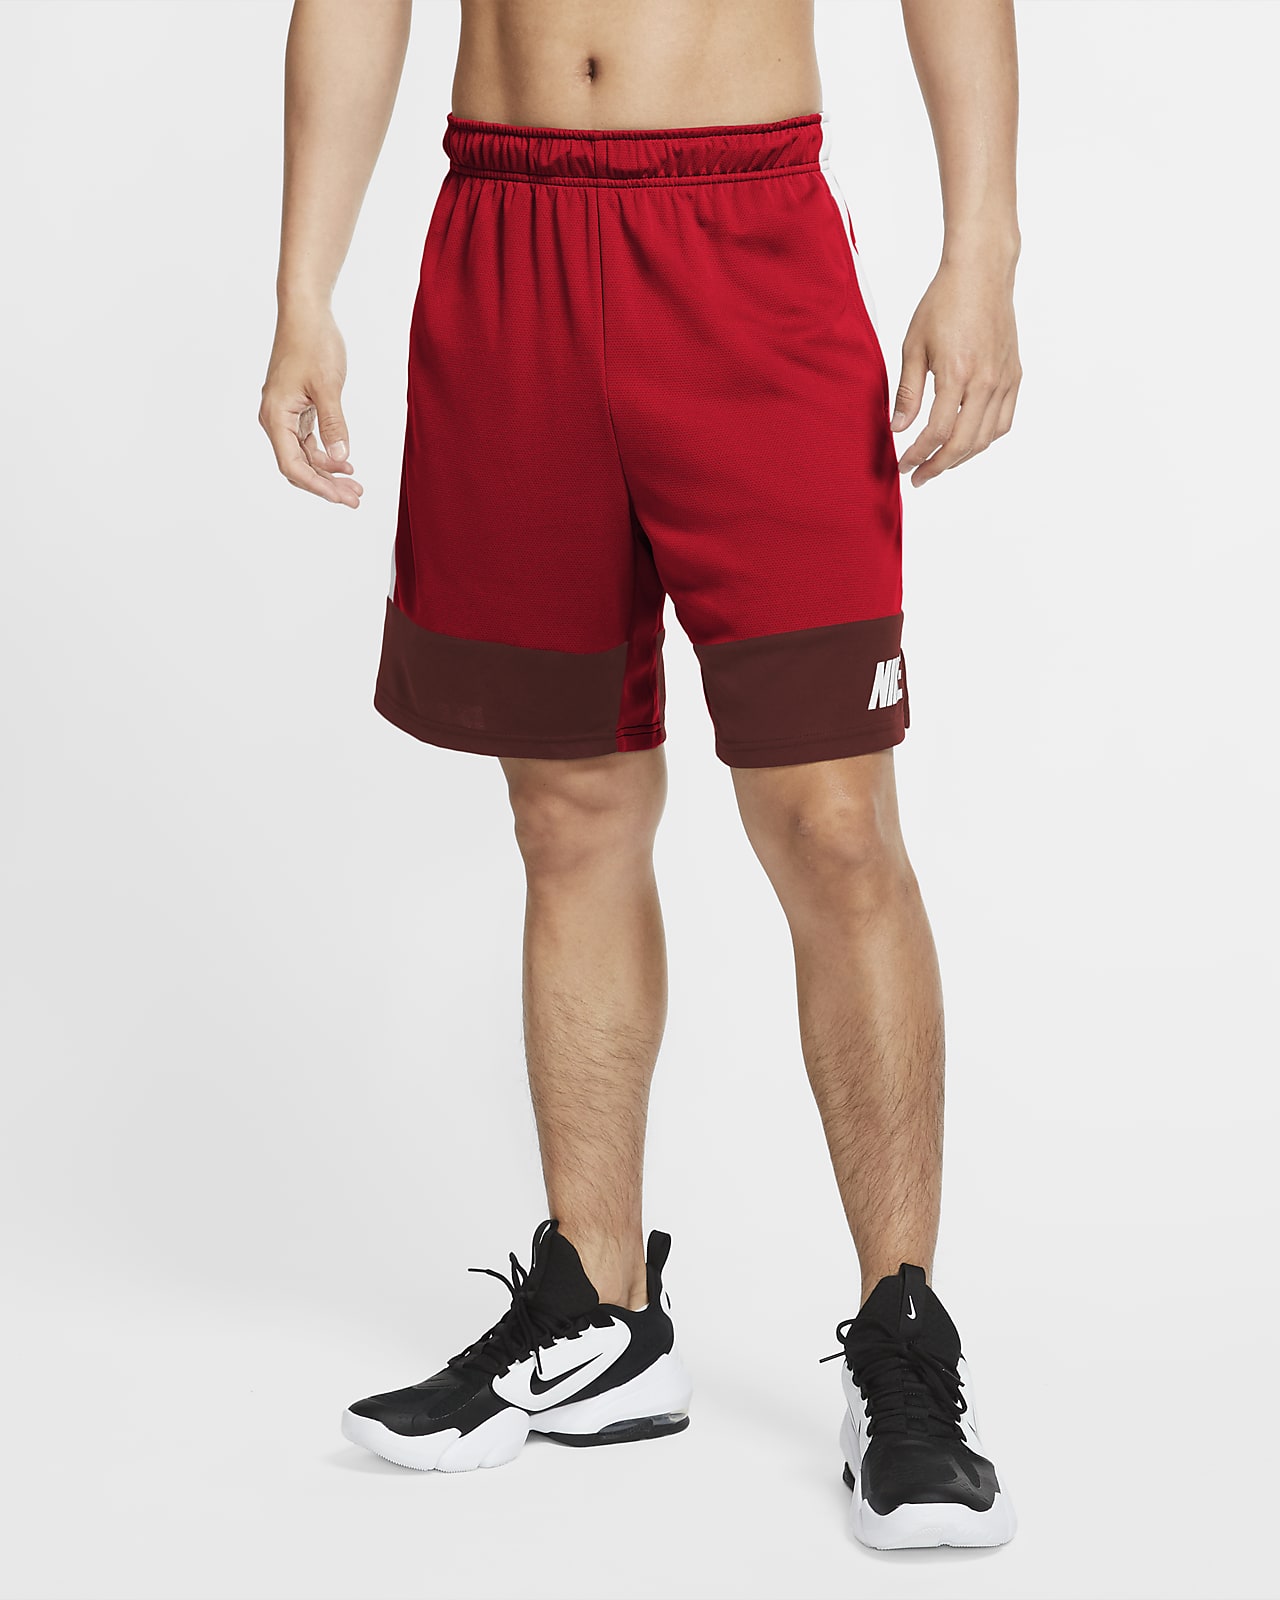 Nike Dri-FIT Men's Training Shorts. Nike CA